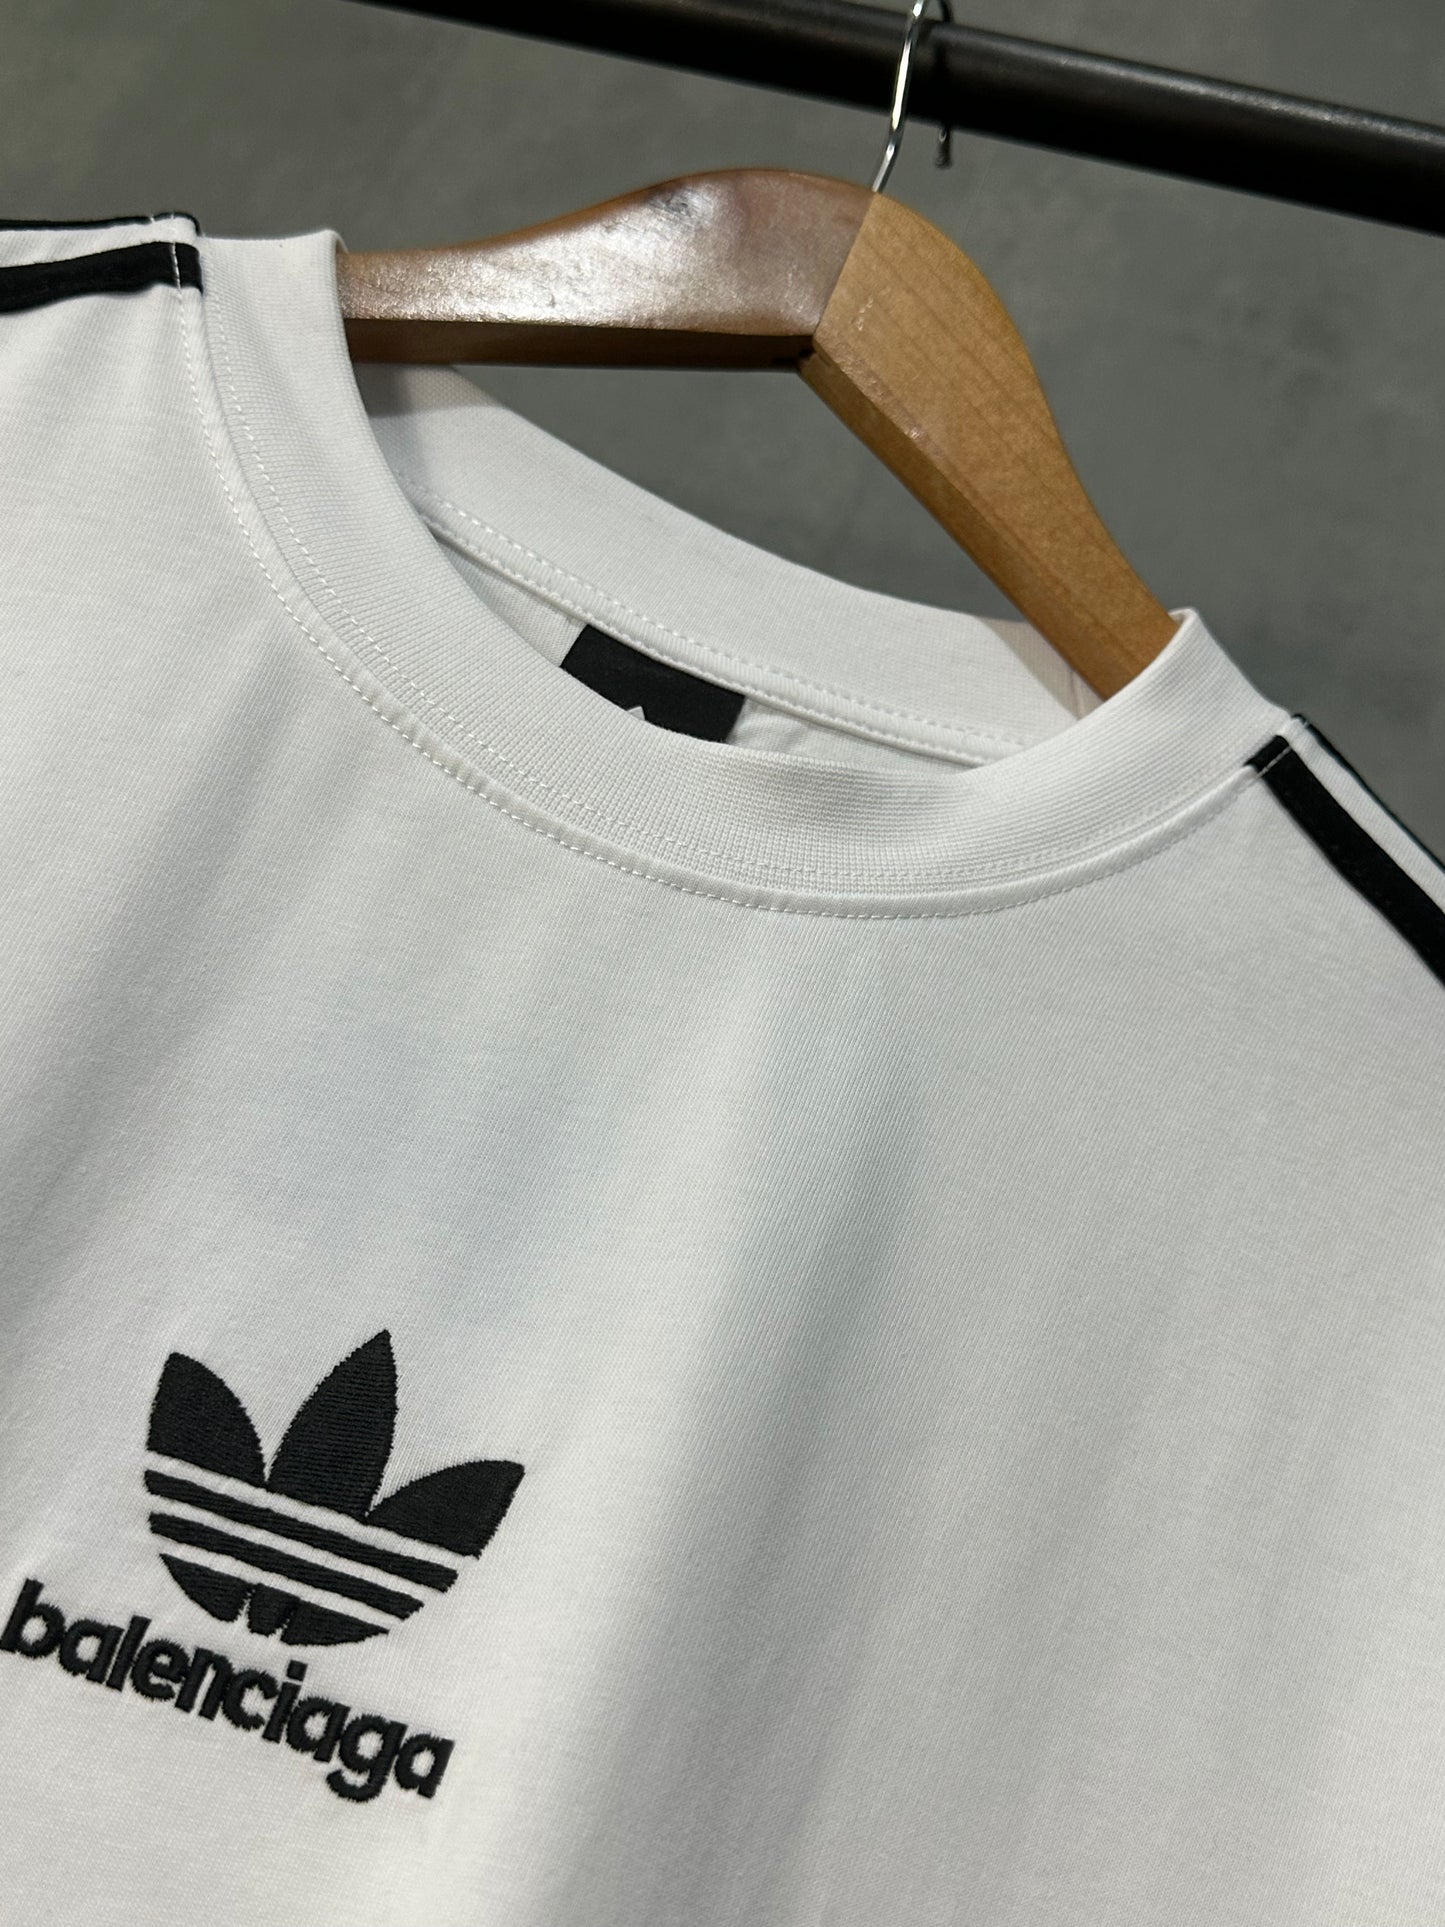 Balenciaga / Adidas T-Shirt (White)